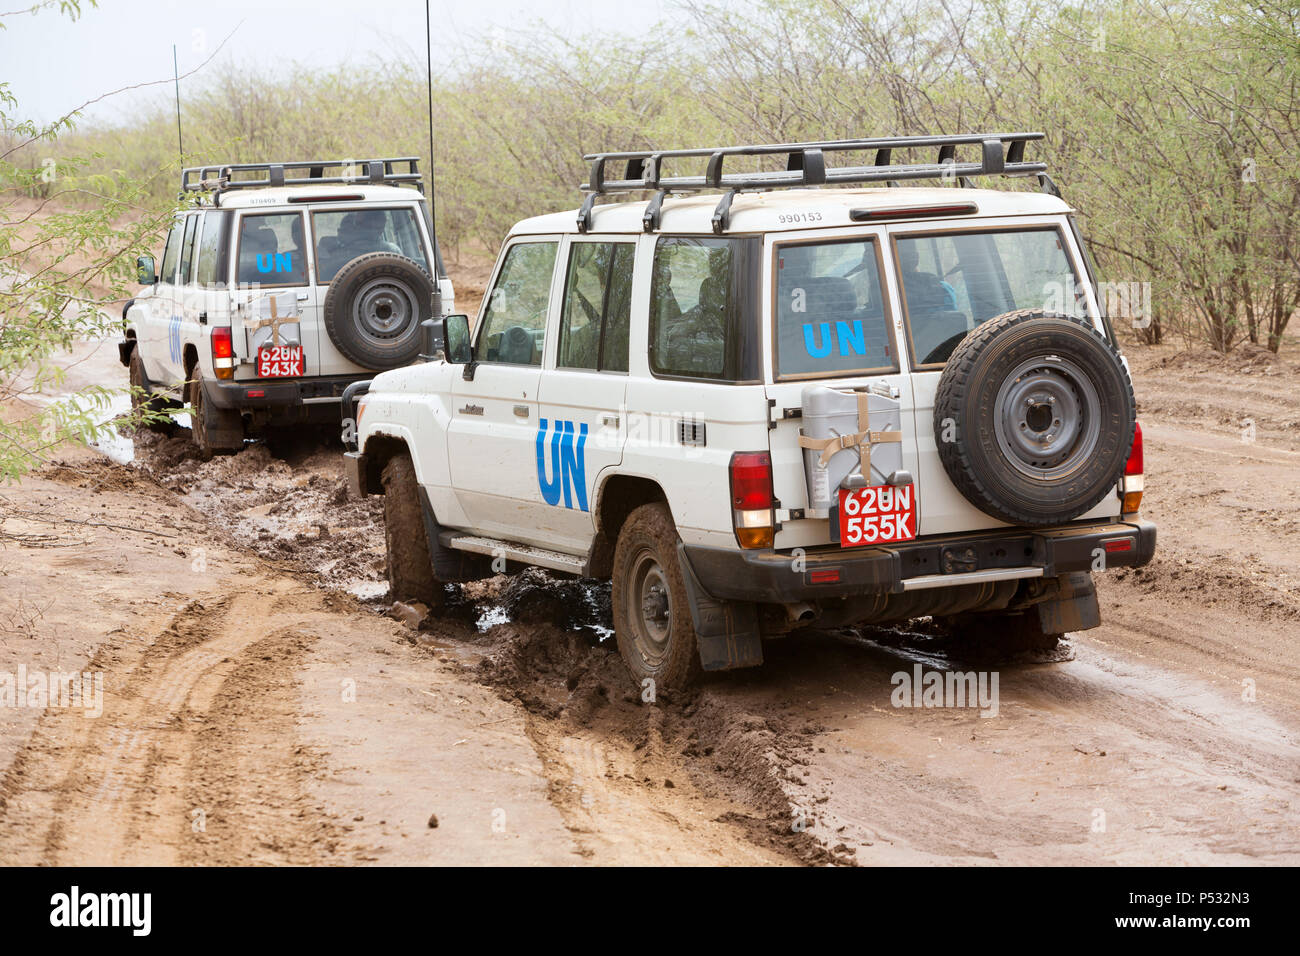 KAKUMA, Kenia - Zwei UN-Land Rover fahren auf einer verregneten Landstraße. Stockfoto